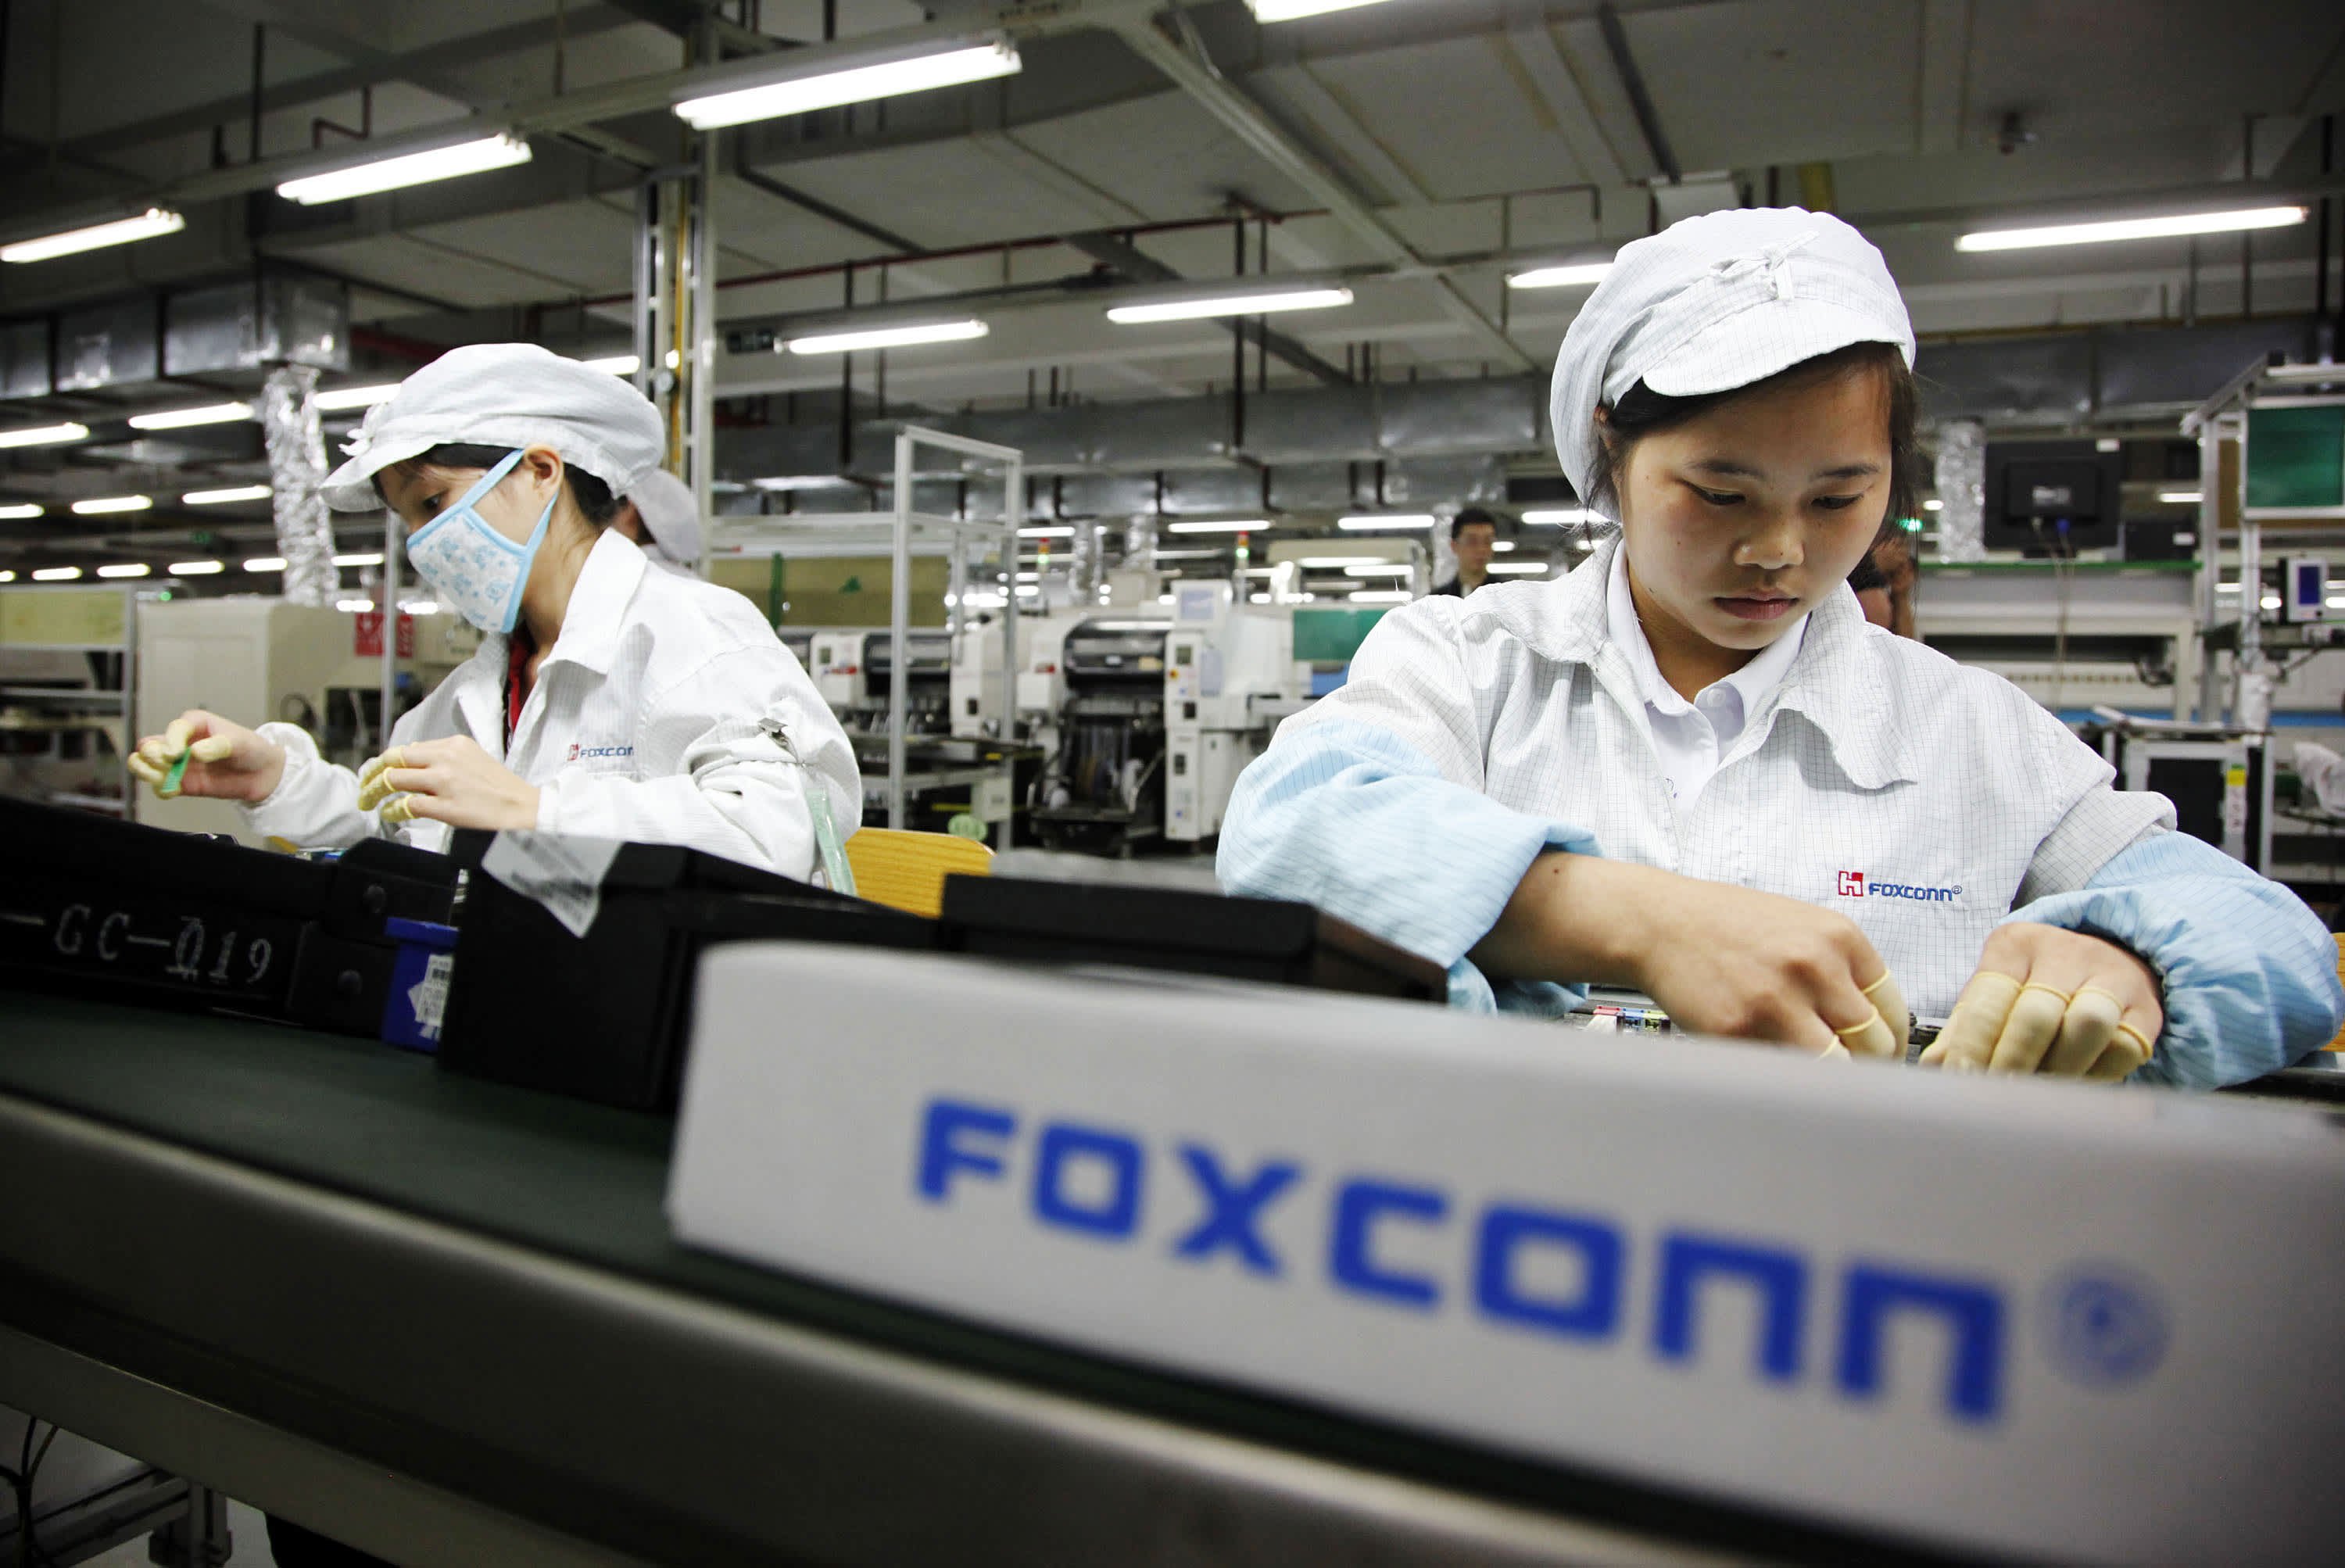 Documentos provam que a Foxconn descumpriu as leis trabalhistas em várias ocasiões.